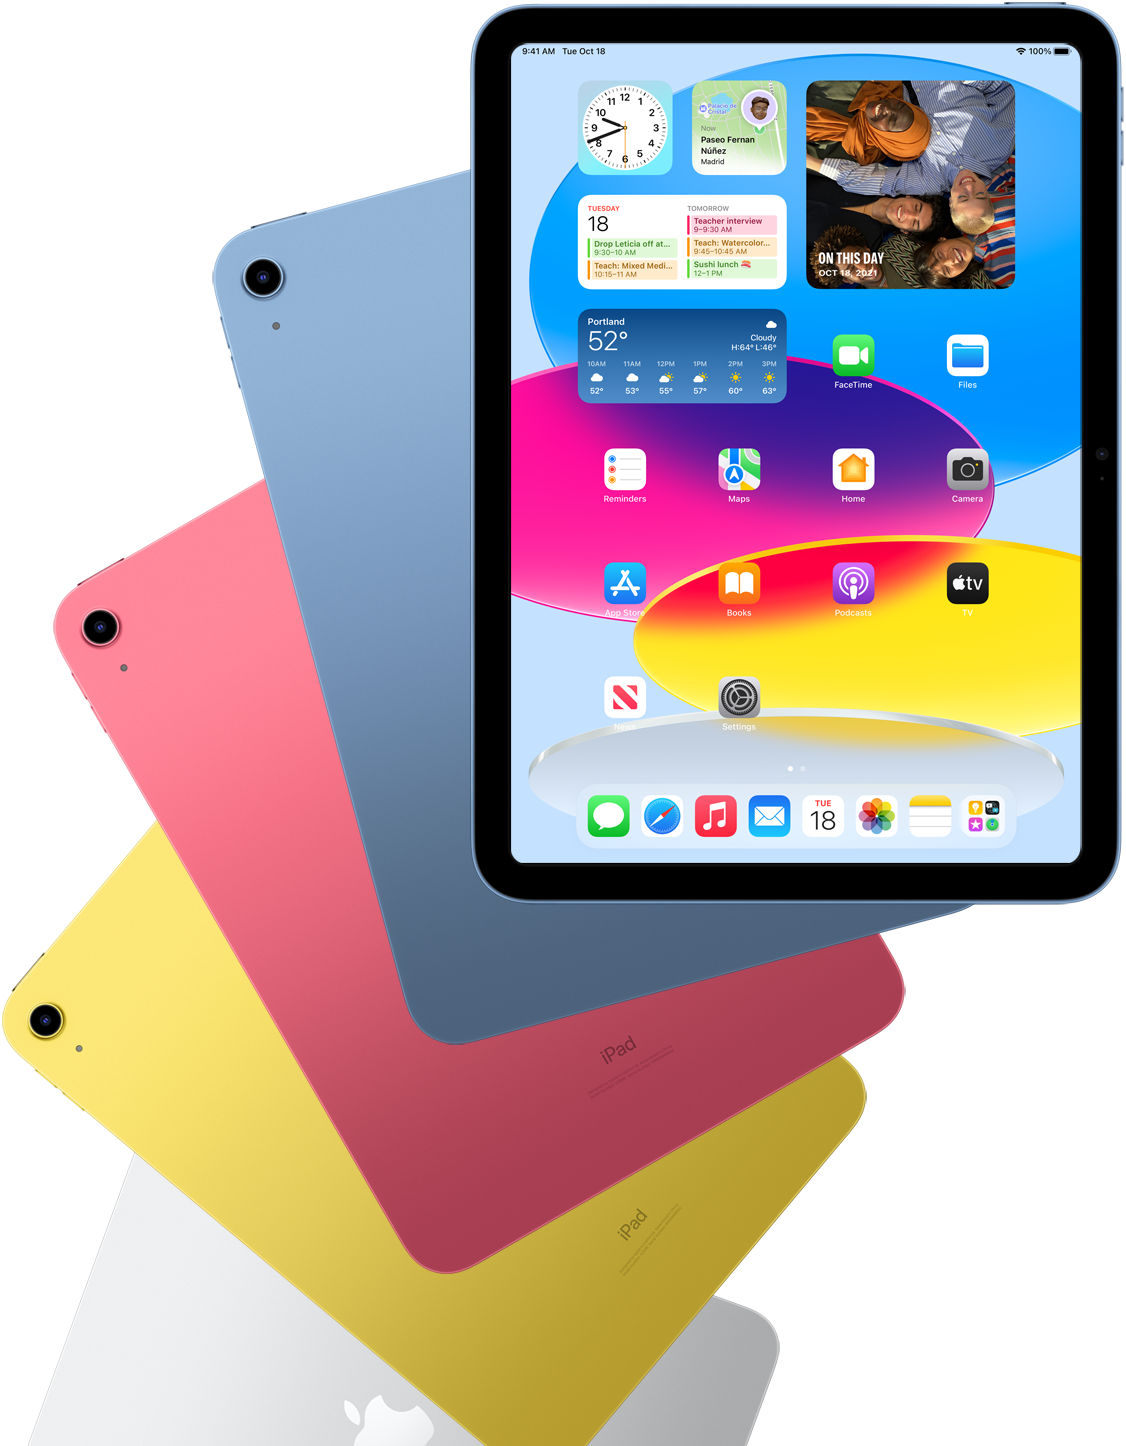 Vista frontal del iPad mostrando la pantalla de inicio con iPads azul, rosa, amarillo y color plata atrás.